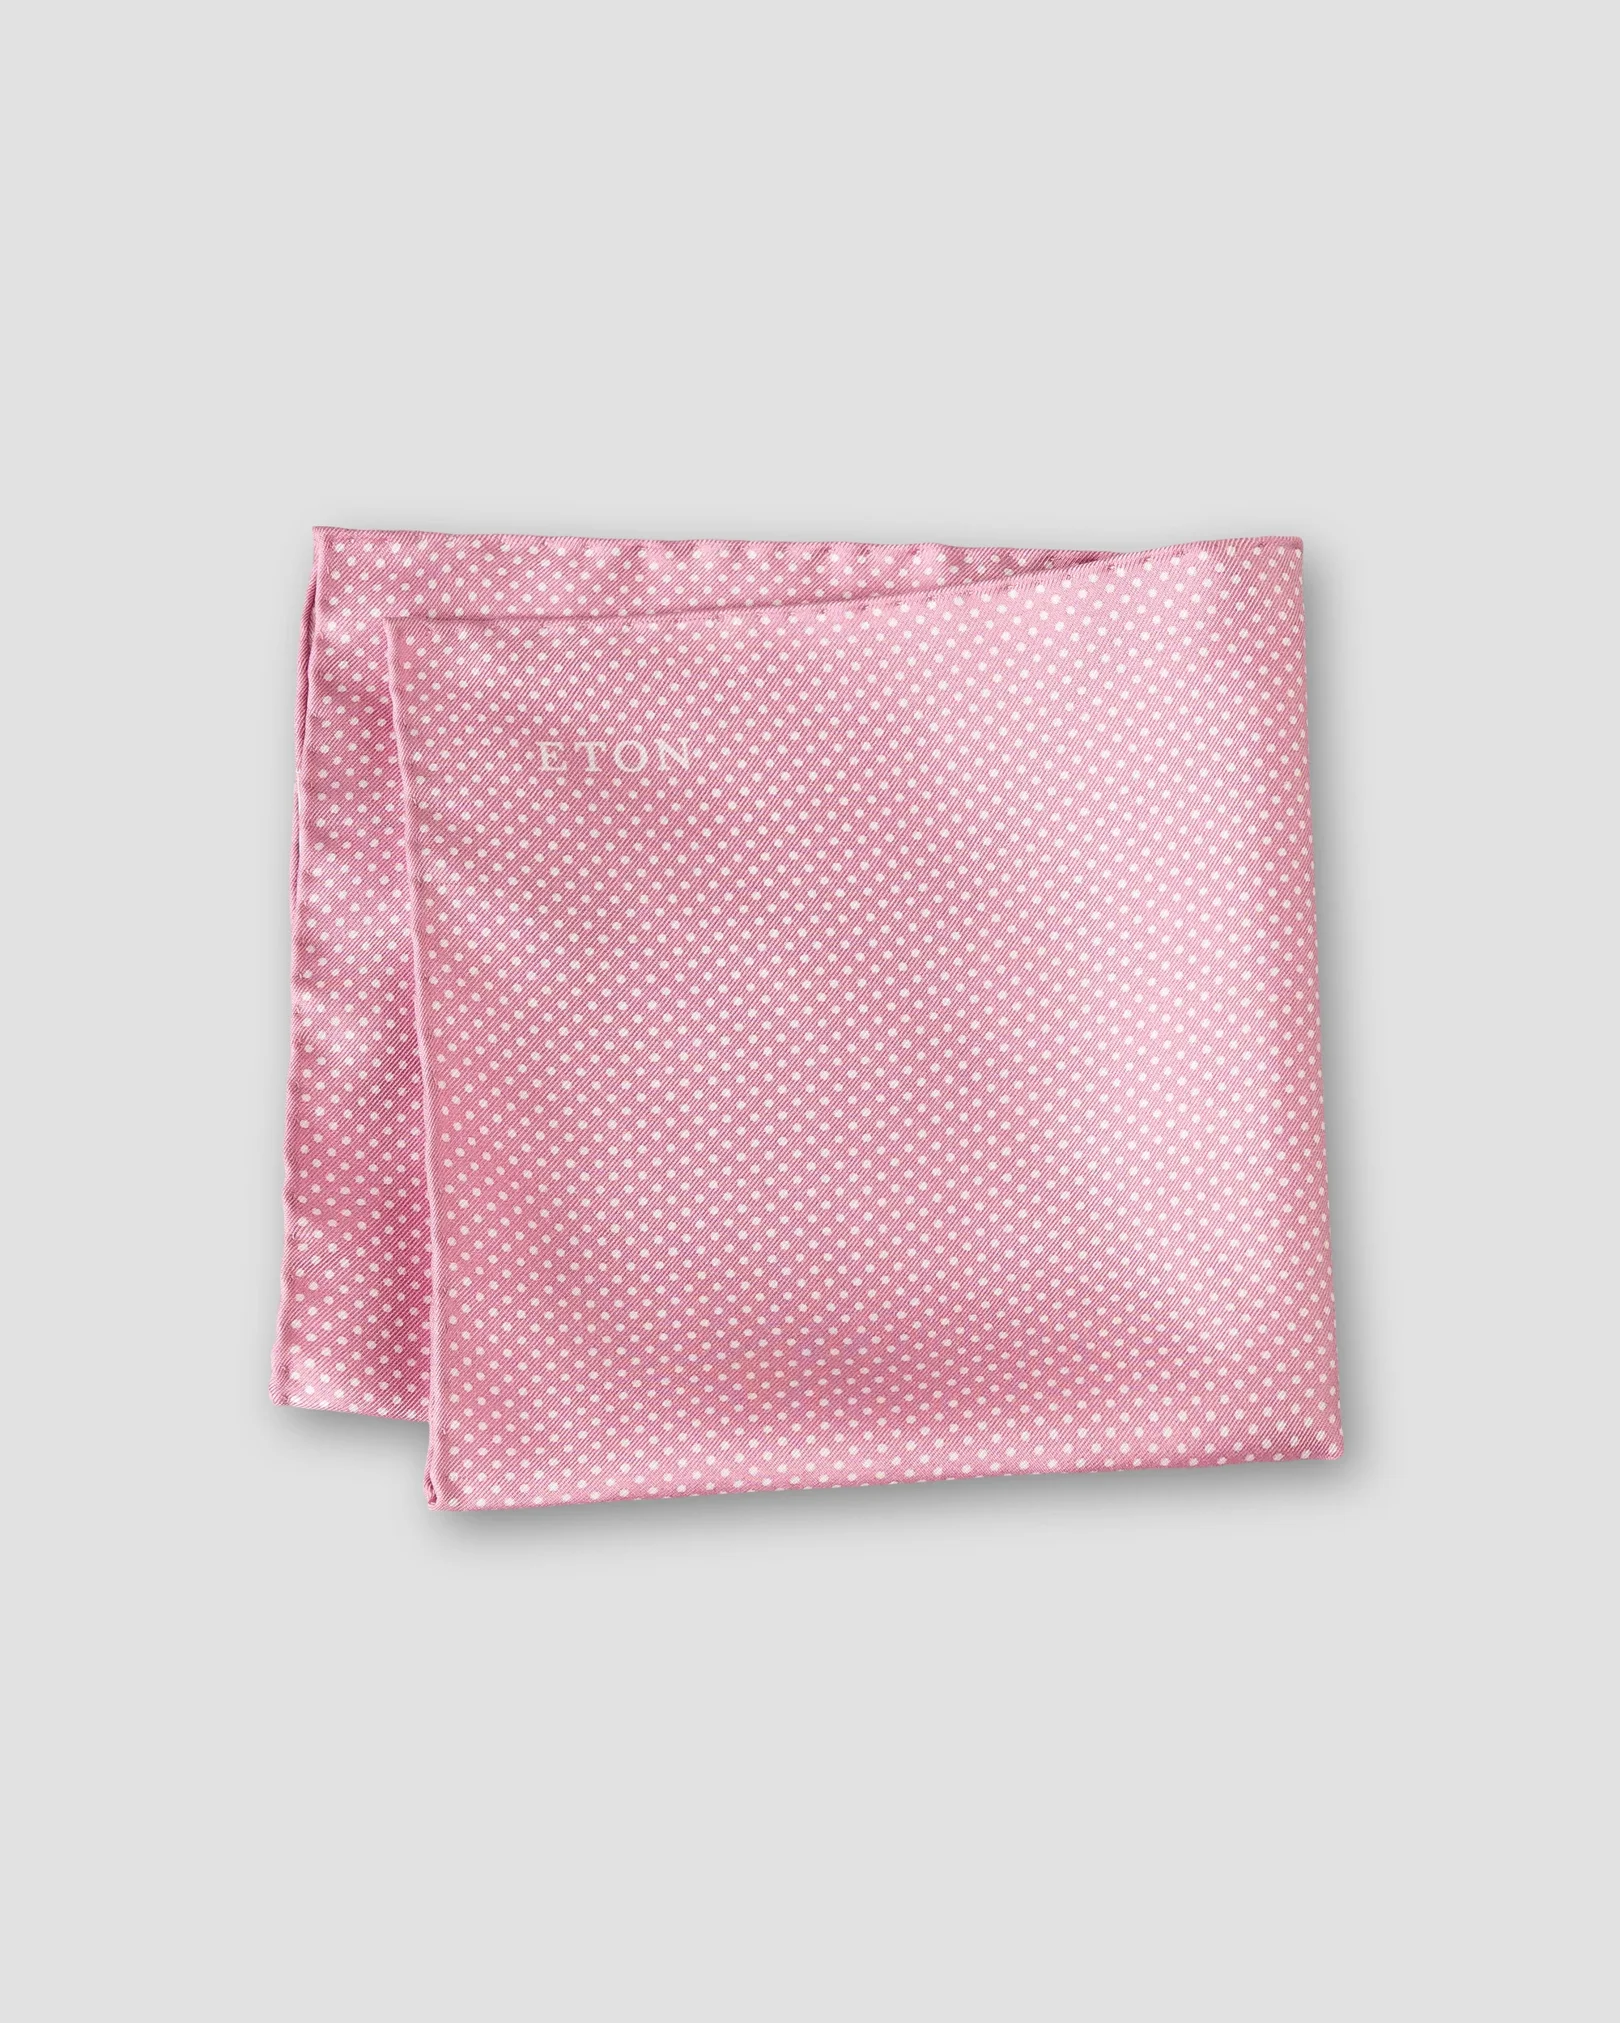 Eton - pink polka dots silk pocket square